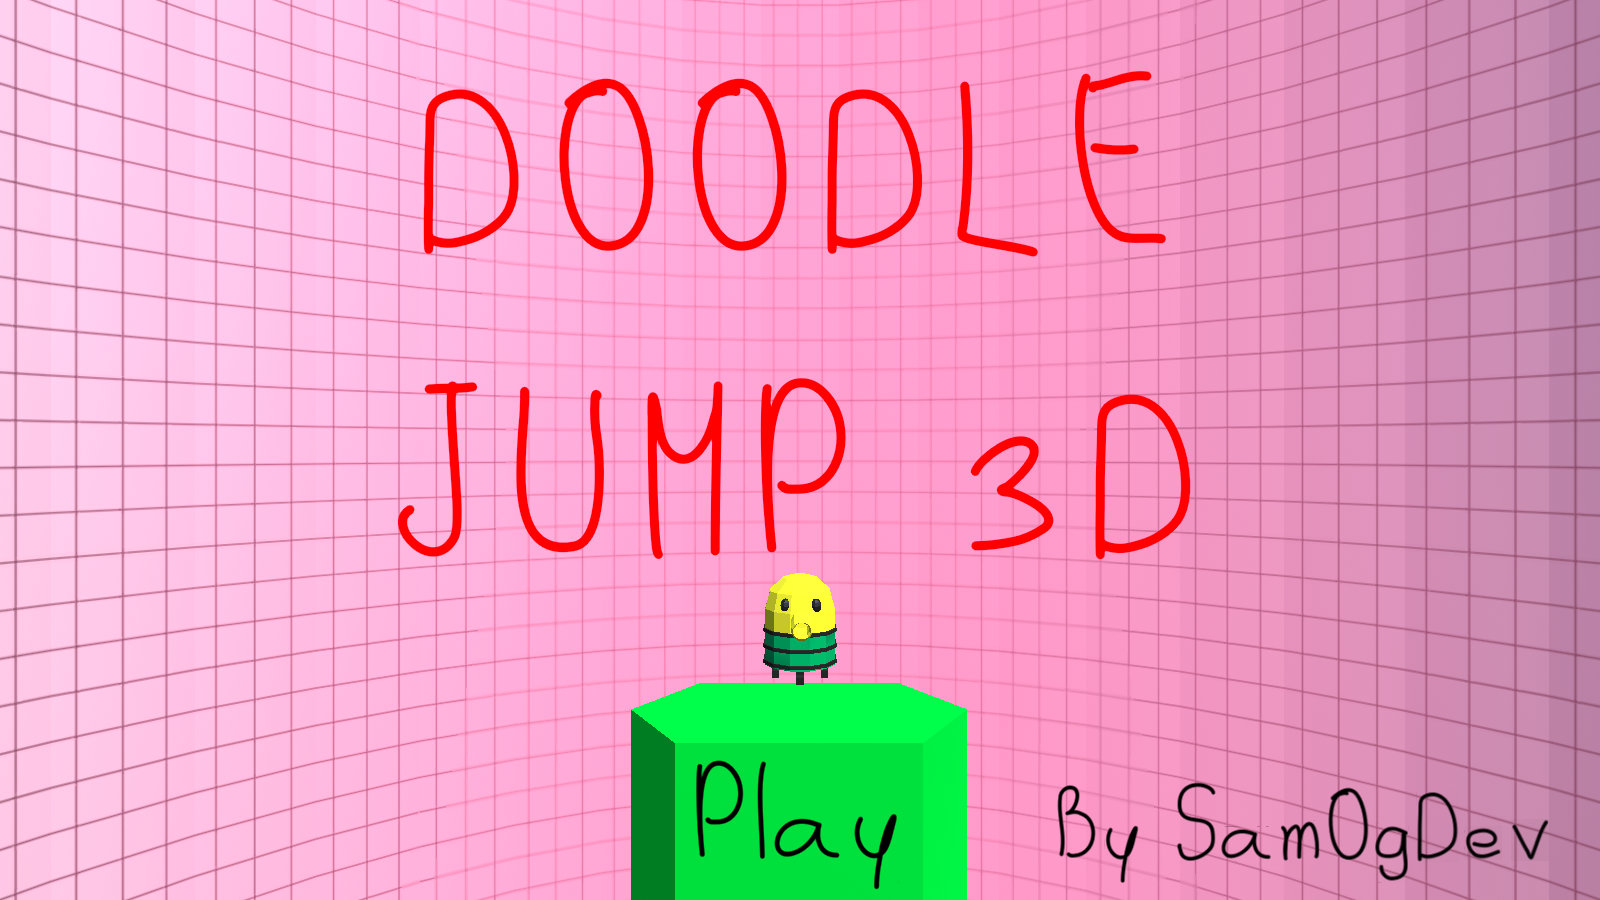 Doodle Jump 3D by SamOgDev